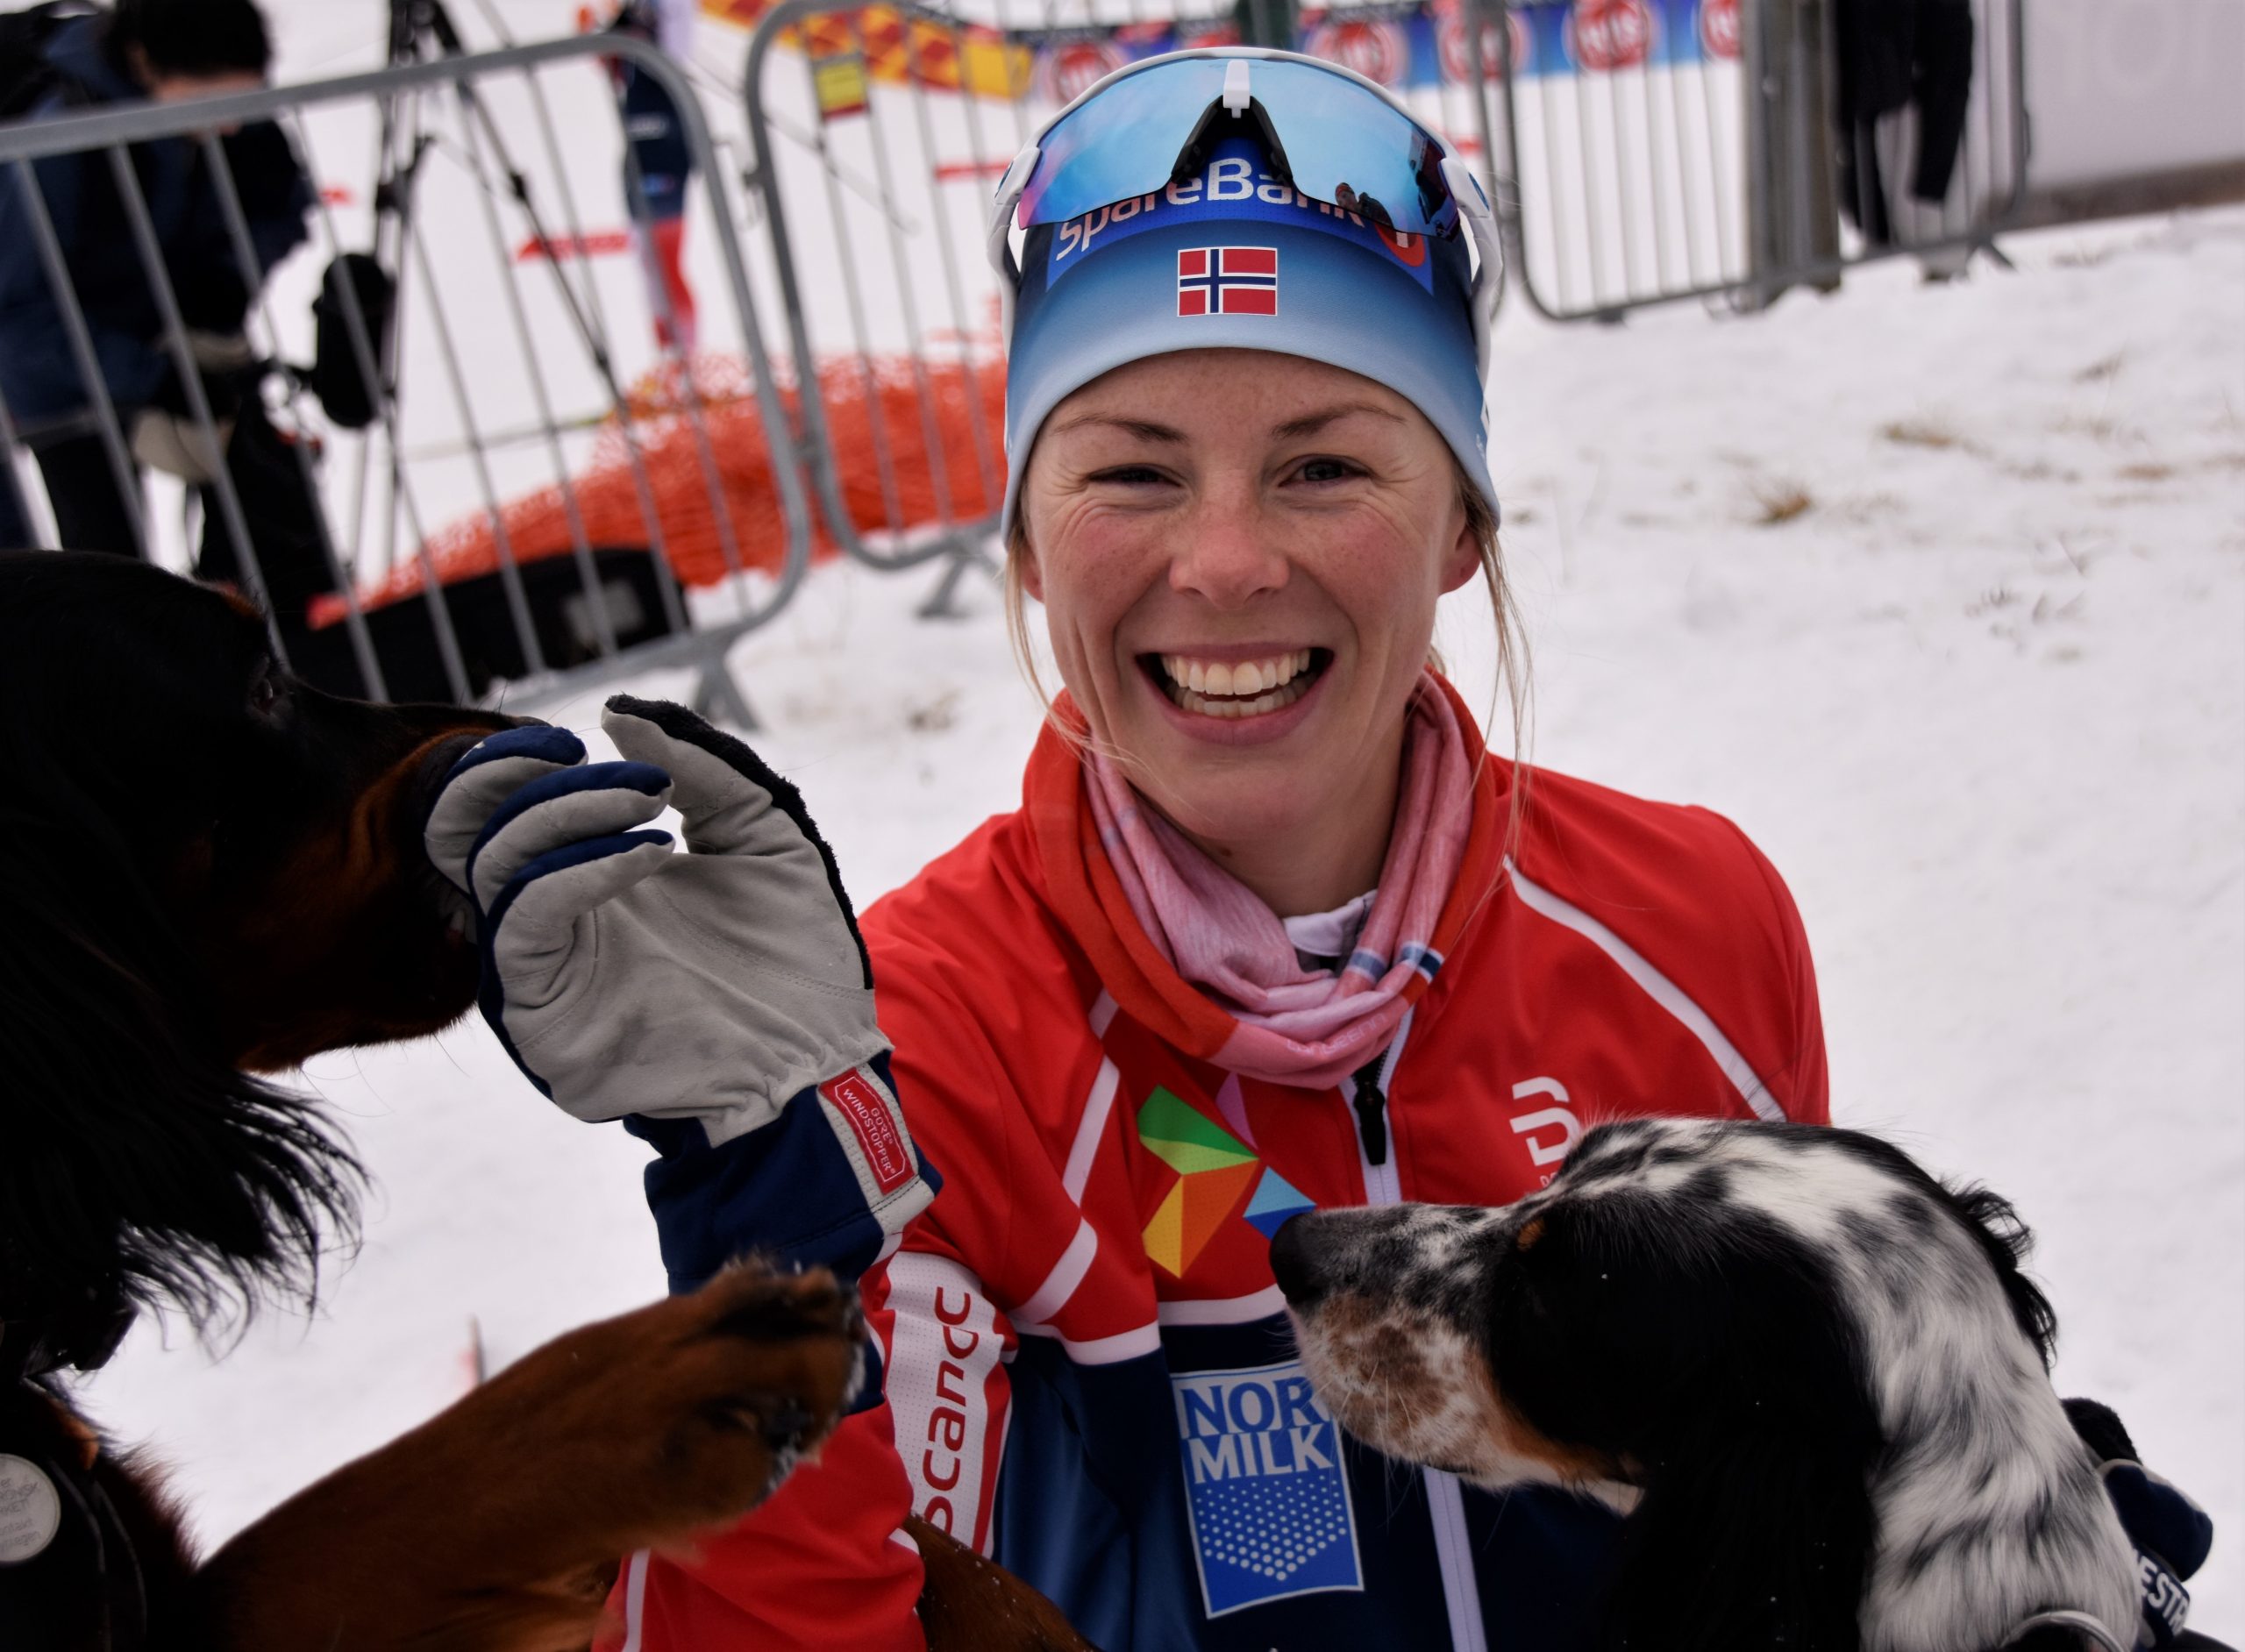 Bli kjent med OL løper Anne Kjersti Kalvå